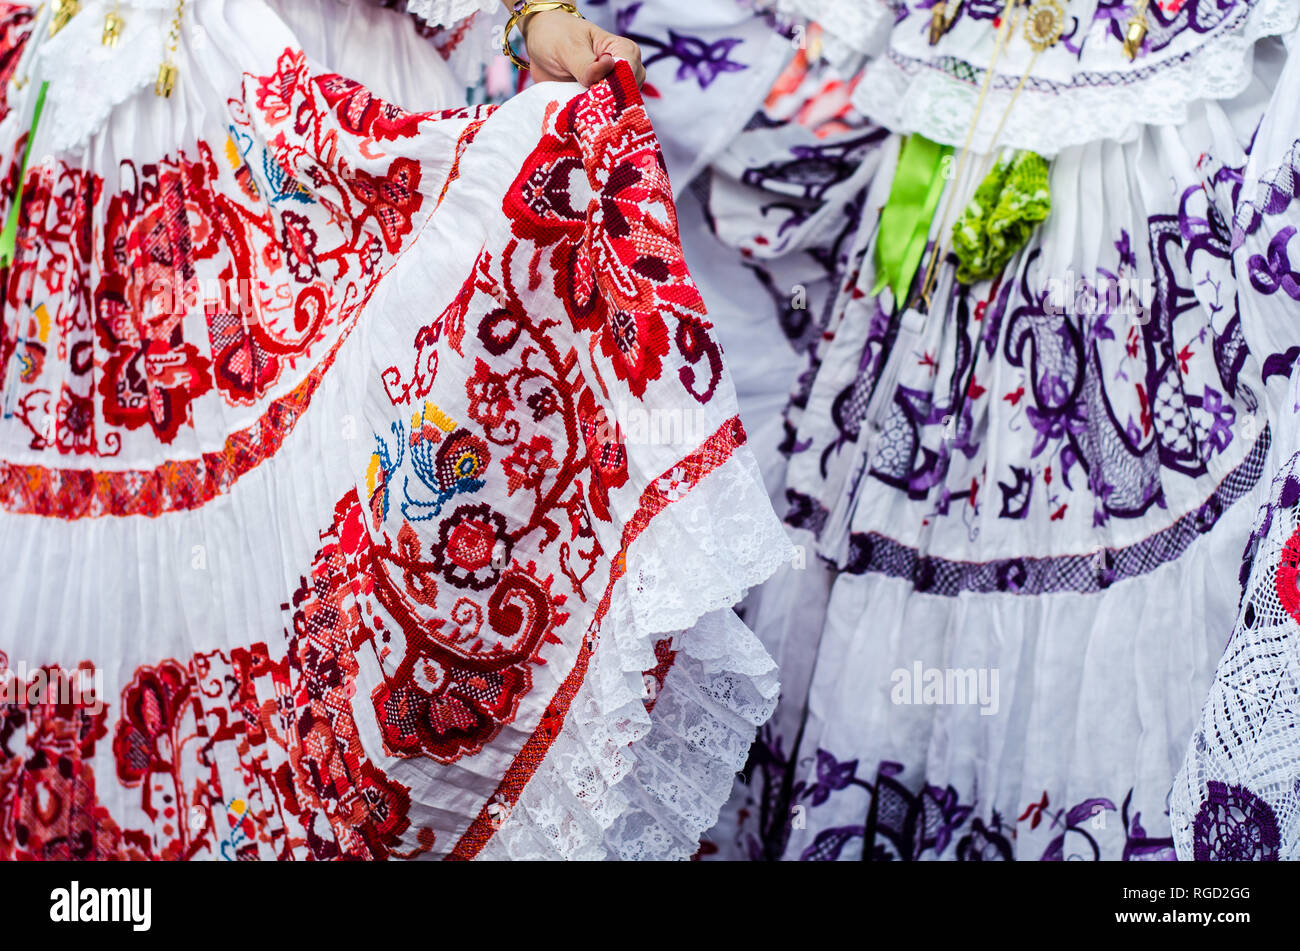 Dettagli del tipico abito panamense noto come pollera. Il modello è tutto a mano utilizzando diverse tecniche di ricamo. Foto Stock